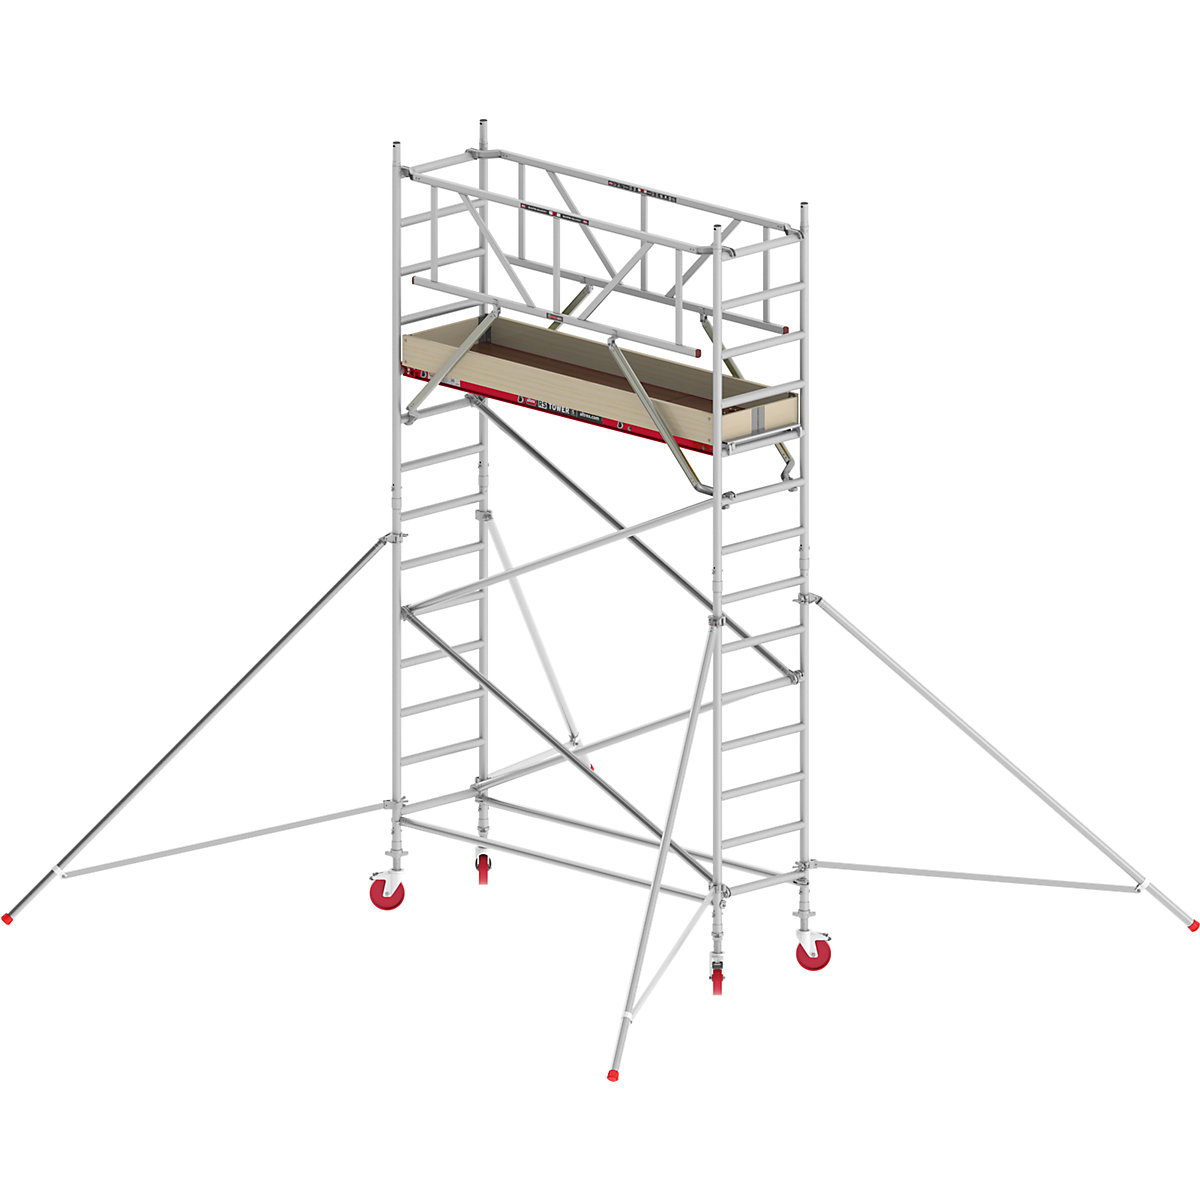 Uska pomična skela RS TOWER 41 – Altrex, drvena platforma, dužina 1,85 m, radna visina 5,20 m-4